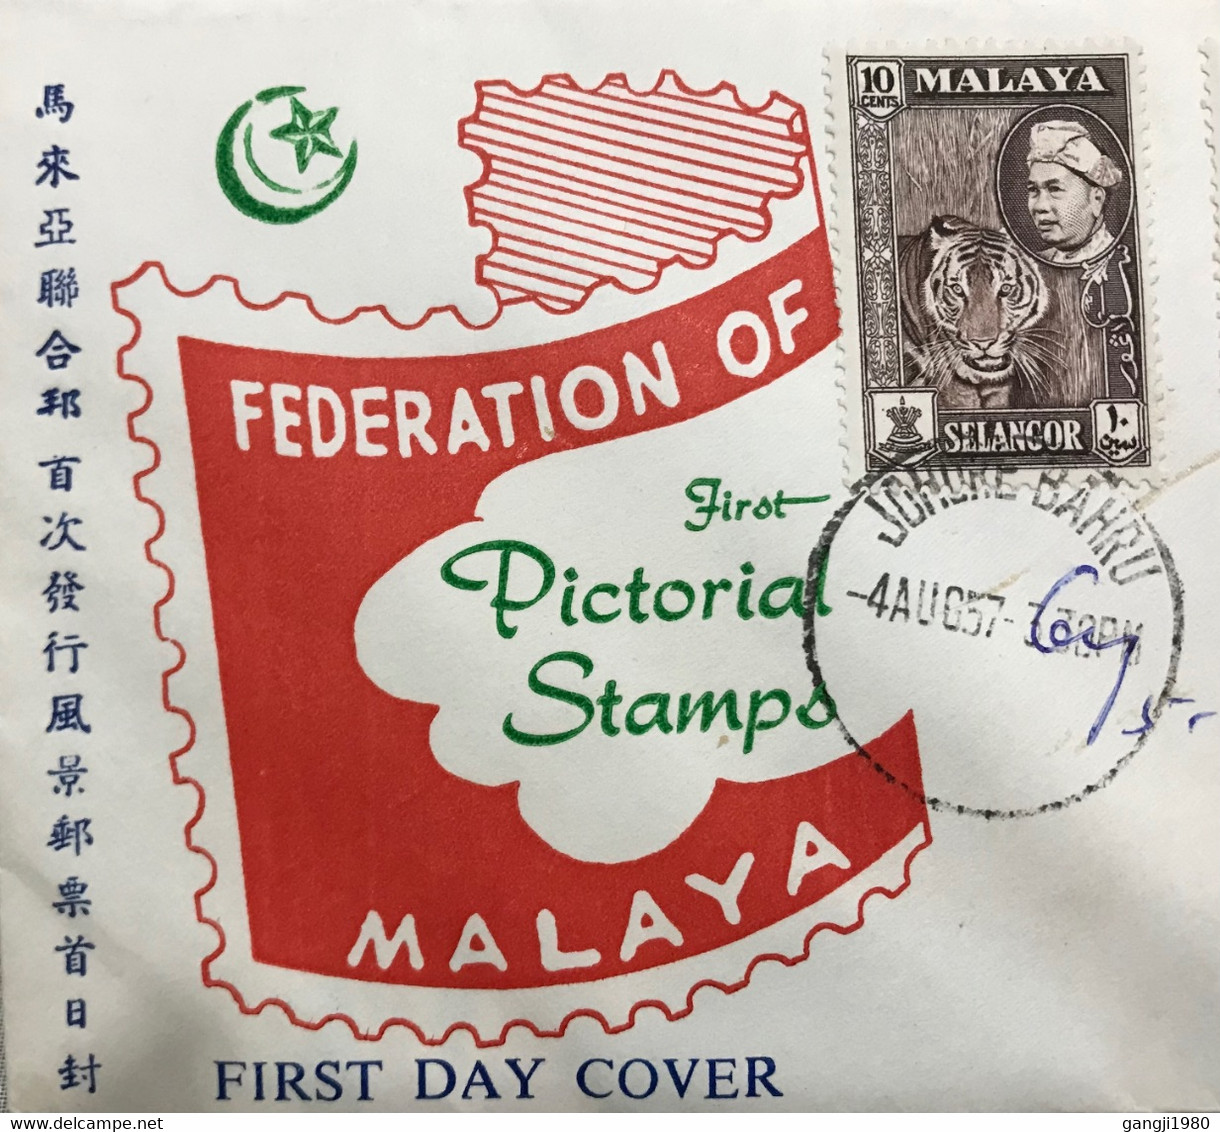 MALAYA -SELANGOOR, KEDAH STATE, ILLUSTRATED PRIVATE USED COVER 1957, FEDERATION OF MALAYA, SELANGOR, PERLIS &KEDAH 3 DI - Malaya (British Military Administration)